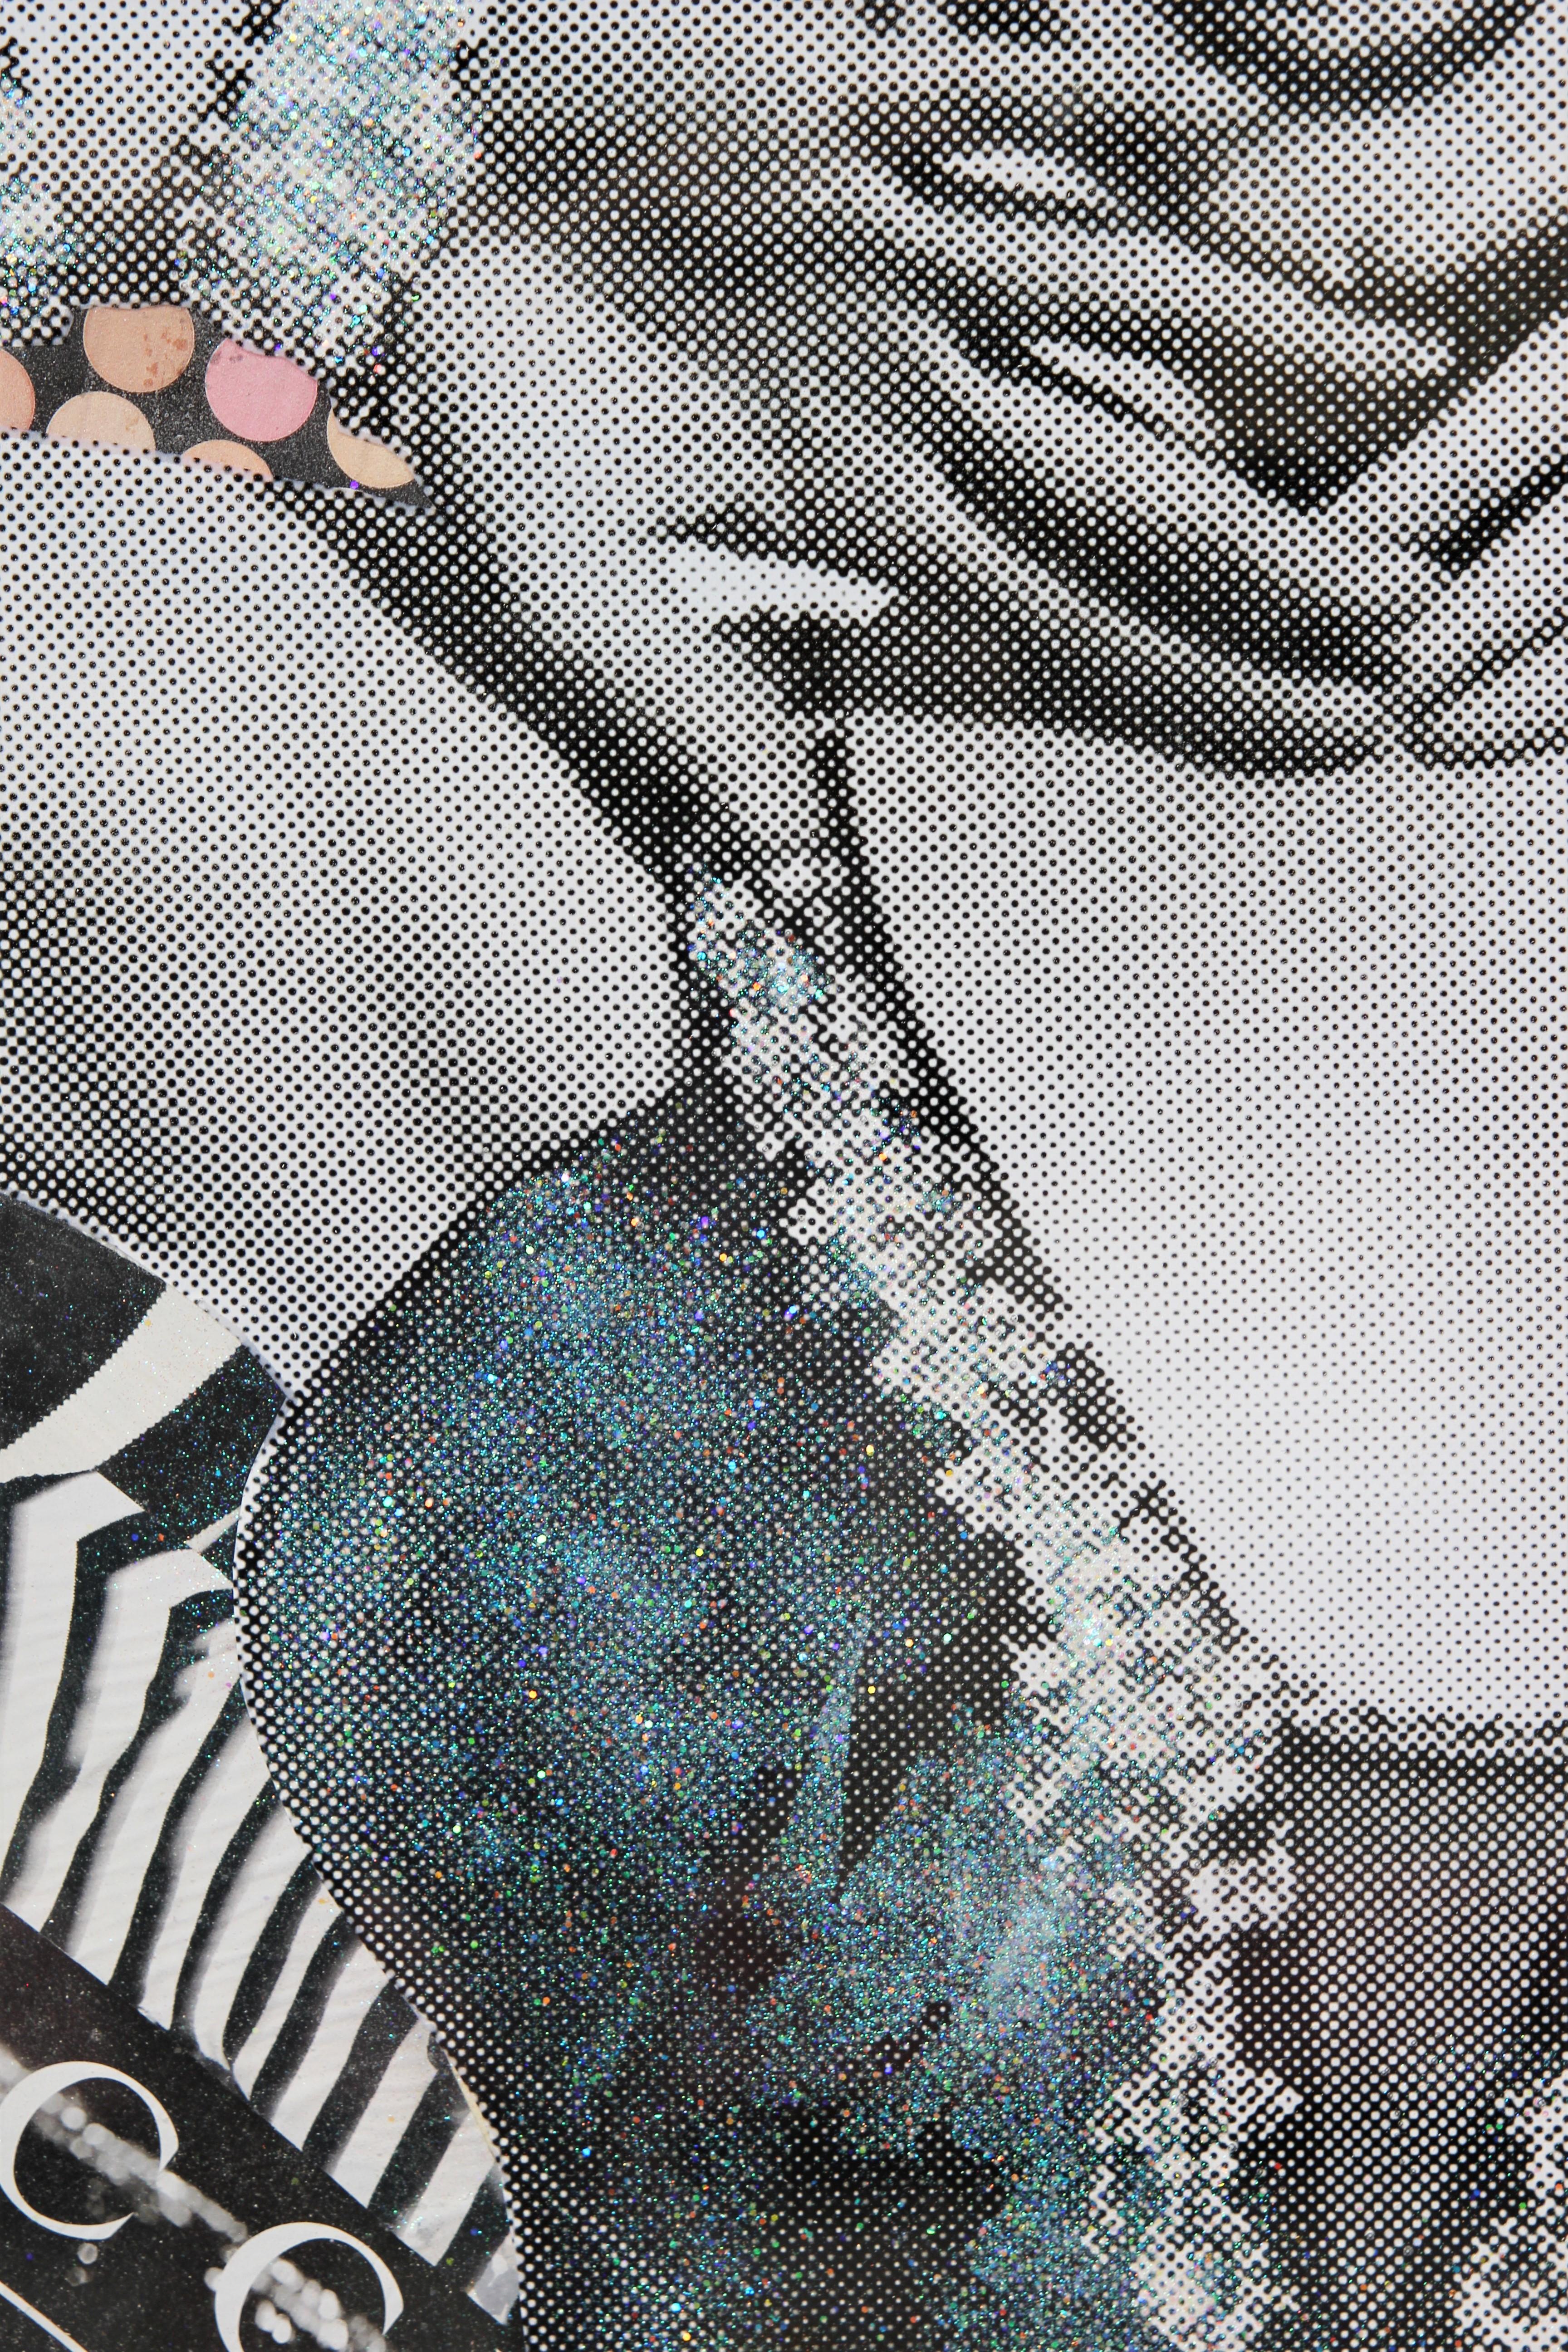 Vogue - Marilyn Monroe - Collage en résine - Technique mixte - Pop Art - Paillettes paillettes 6